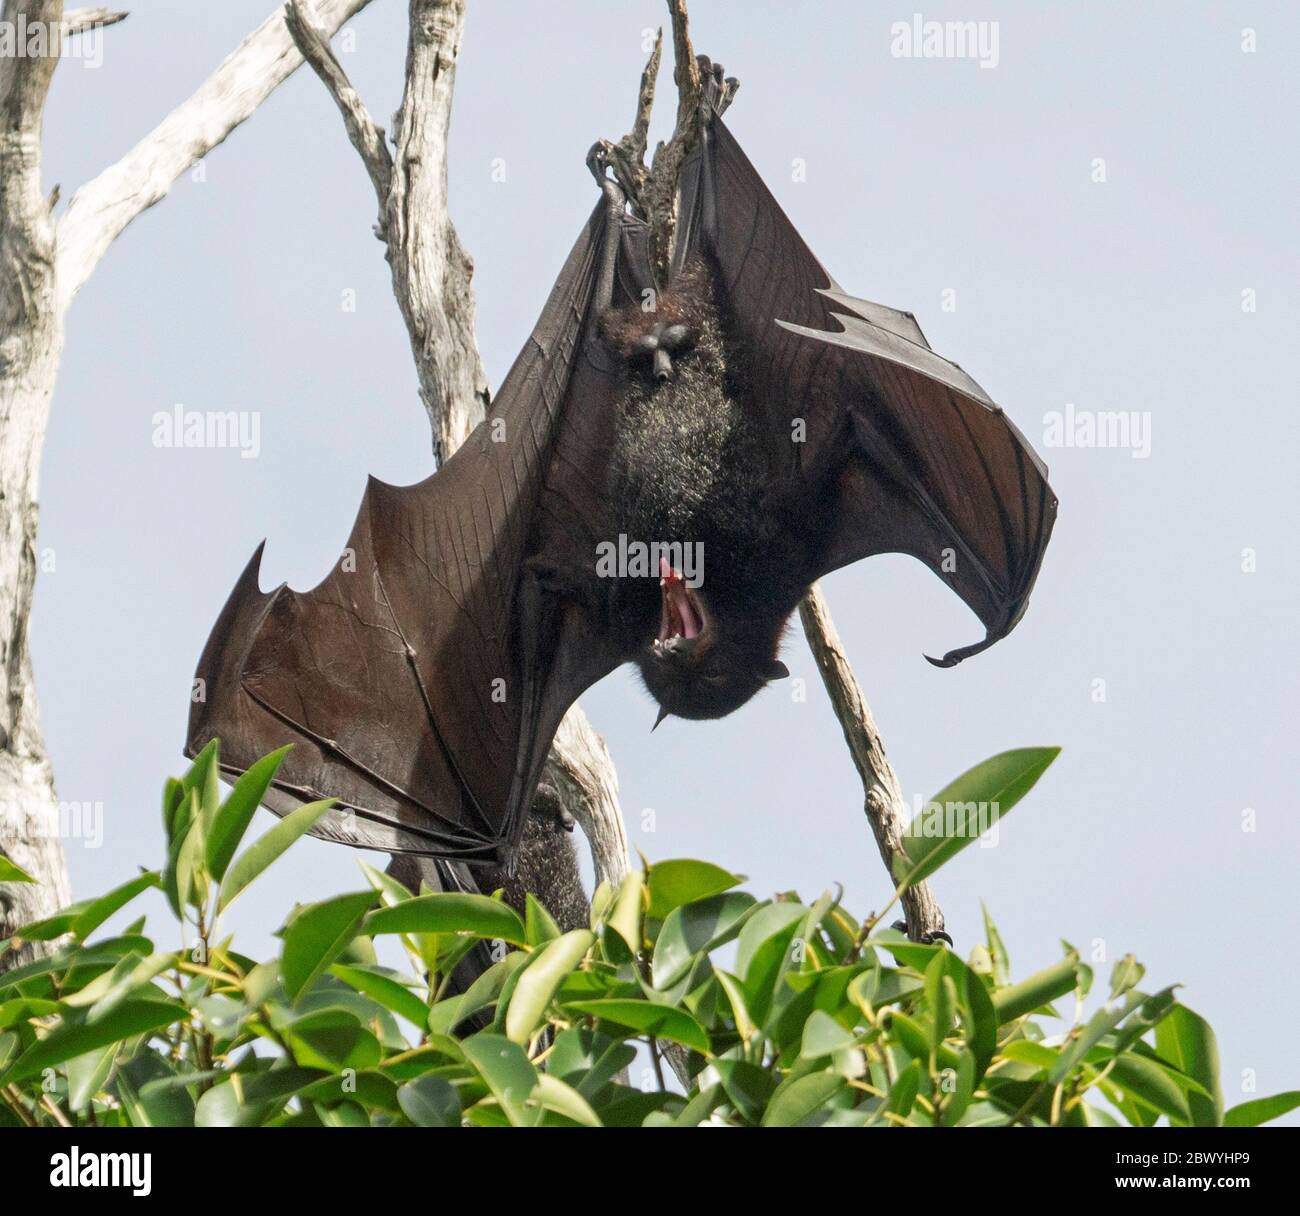 Australischer grauköpfiger Flugfuchs / Fruchtfledermaus, Pteropus poliocephalus, hängt von einem Zweig des Baumes mit ausgestreckten Flügeln und offenem Mund Stockfoto